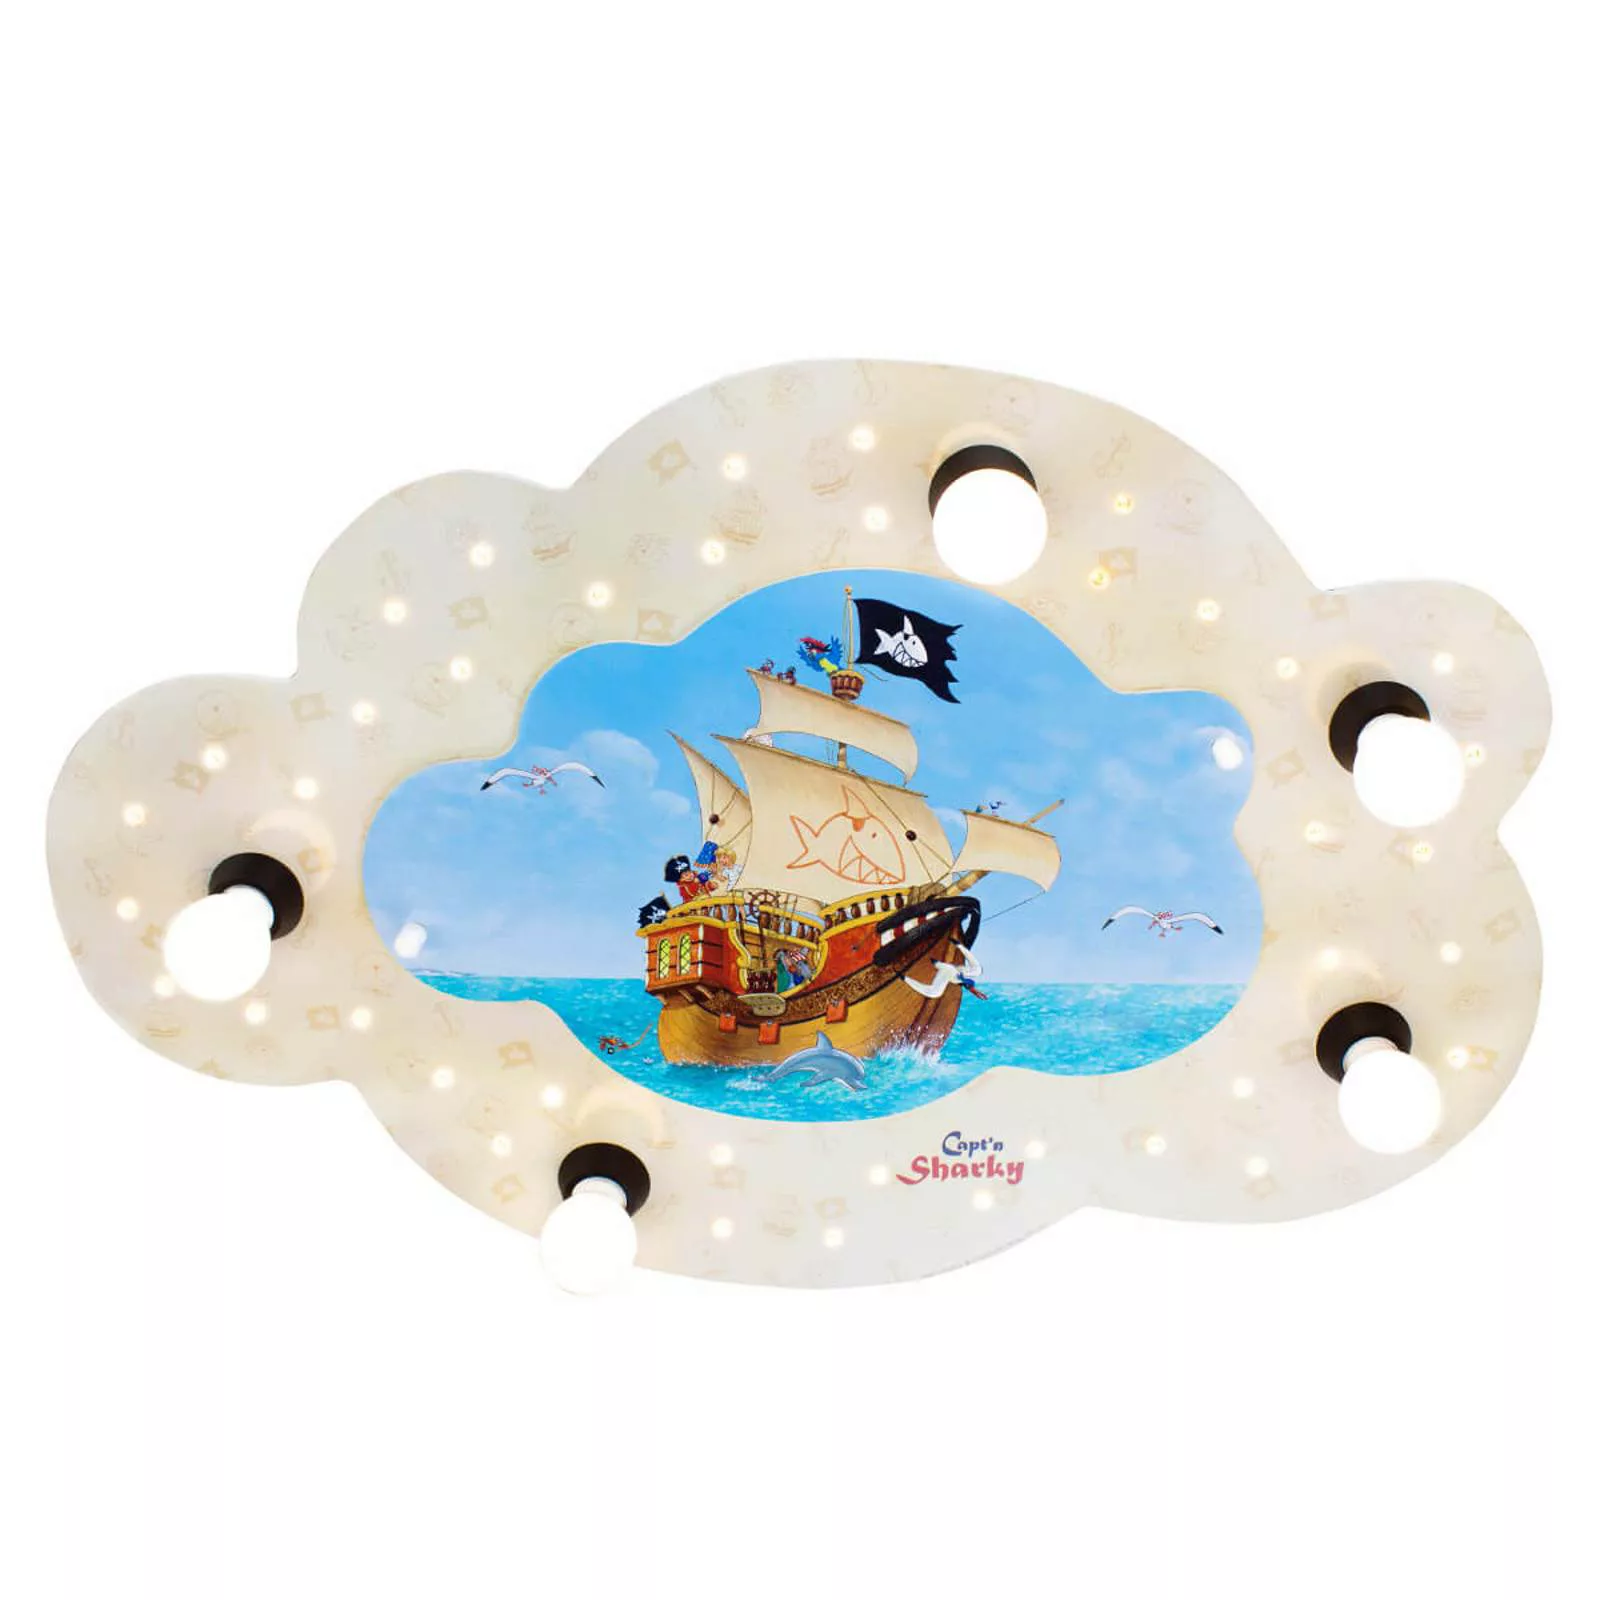 Wolkenförmige Deckenleuchte Capt'n Sharky mit LEDs günstig online kaufen